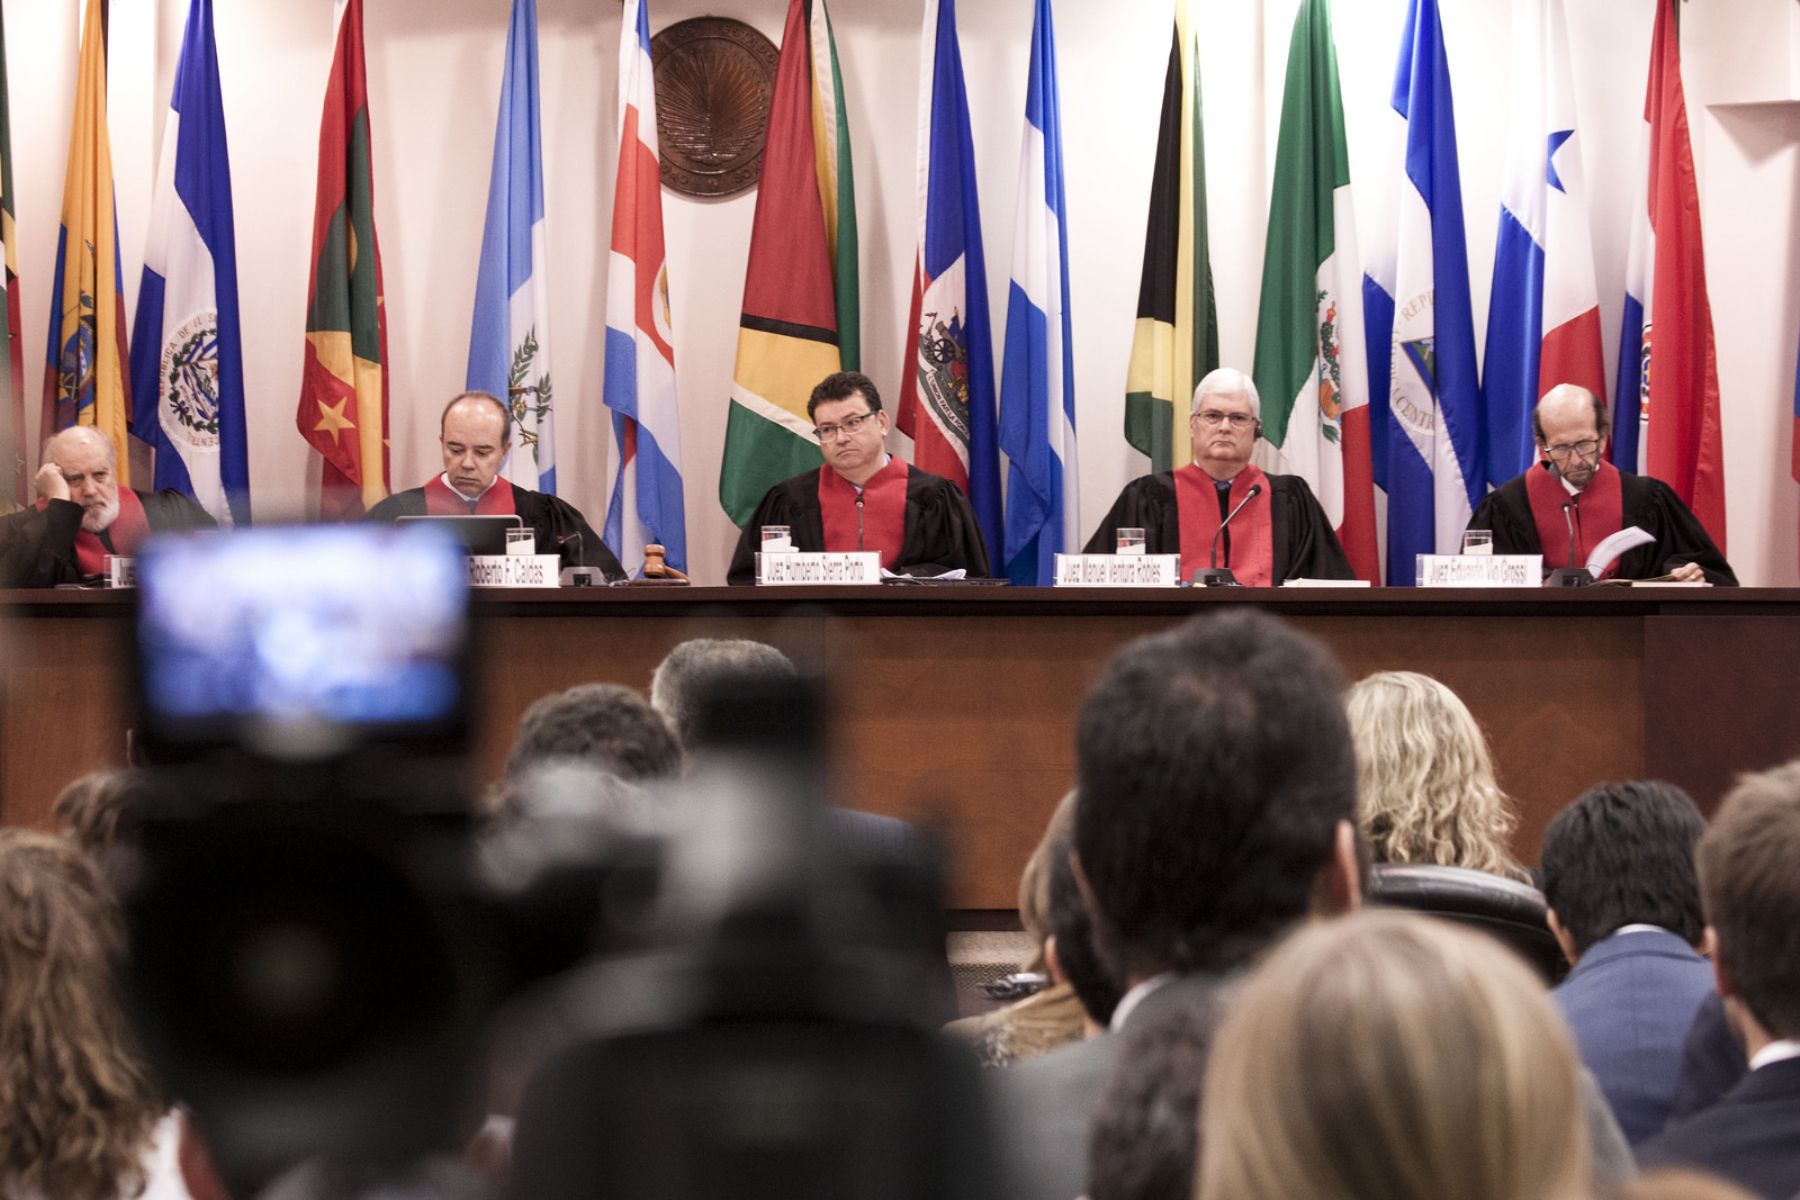 Audiencia de la Corte Interamericana de Derechos Humanos sobre el caso Cruz Sánchez y otros vs. Perú. Foto: Corte IDH